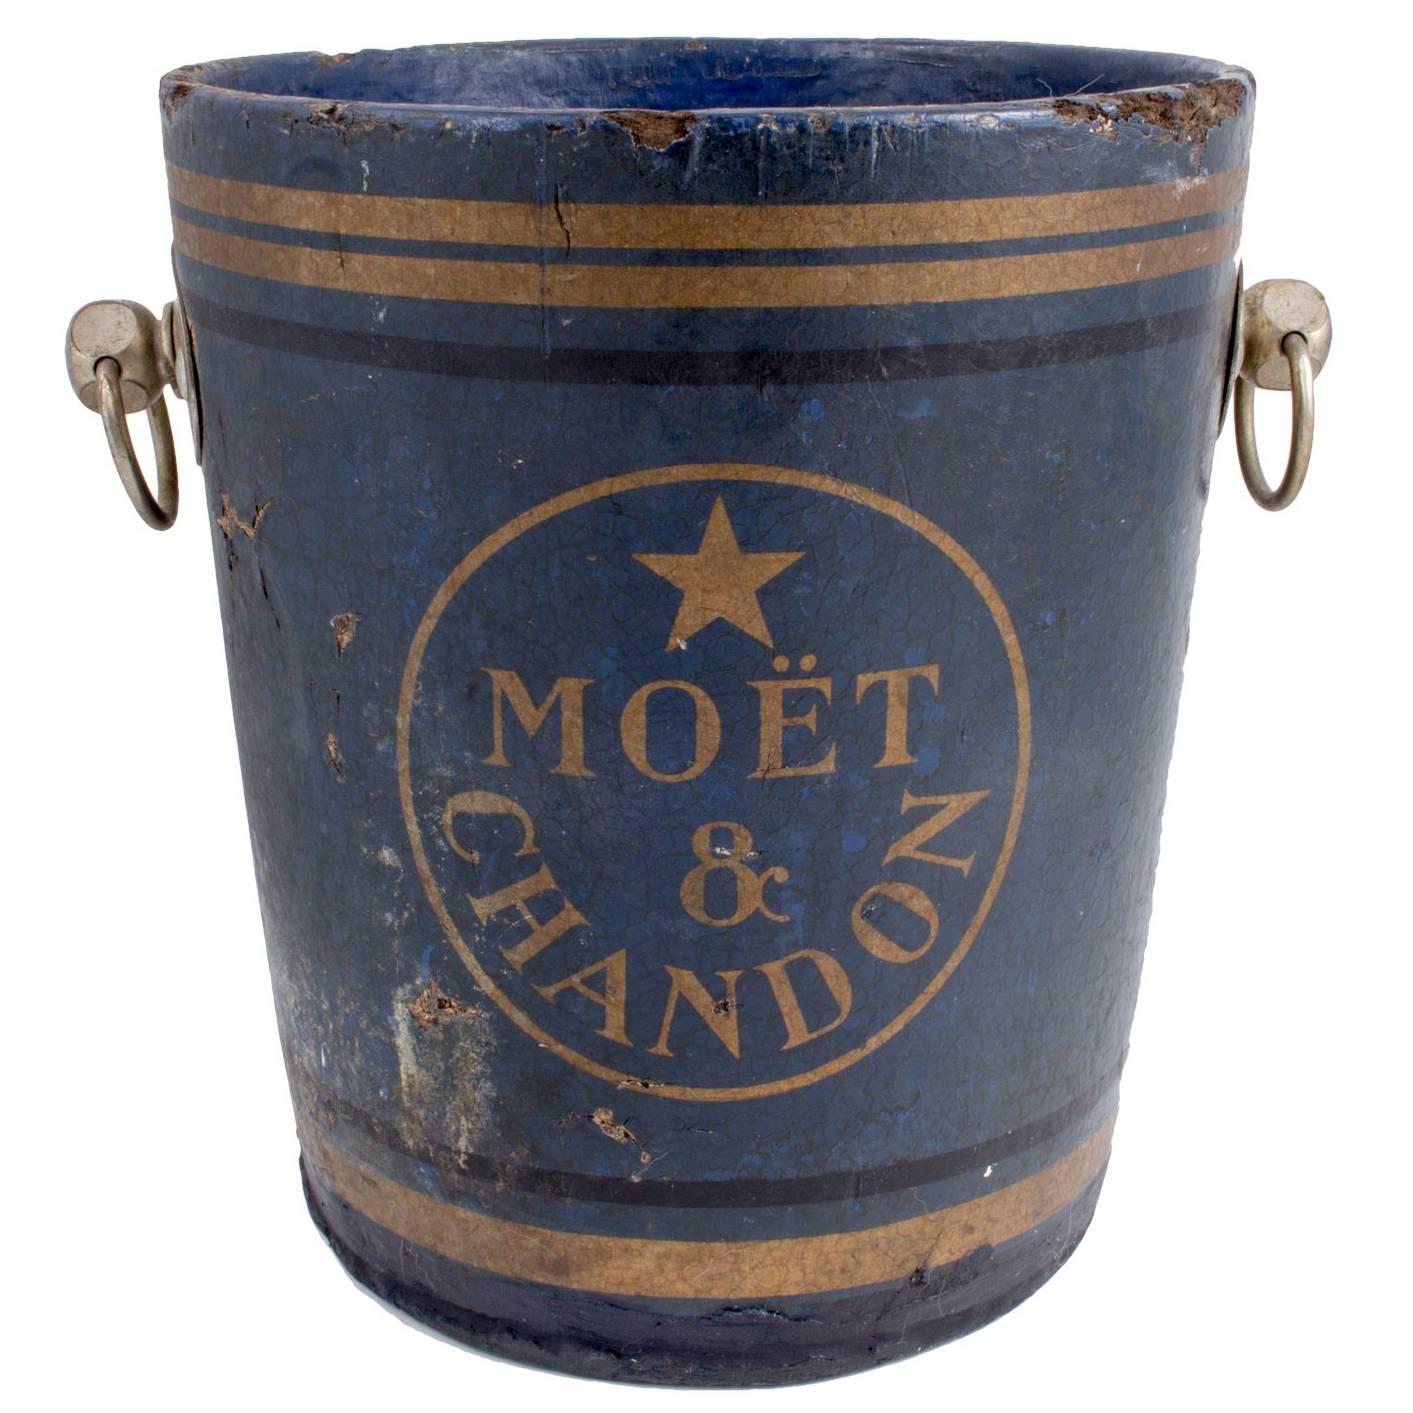 Rare 19th Century French Moët & Chandon Blue Label Papier Mâché Champagne Bucket